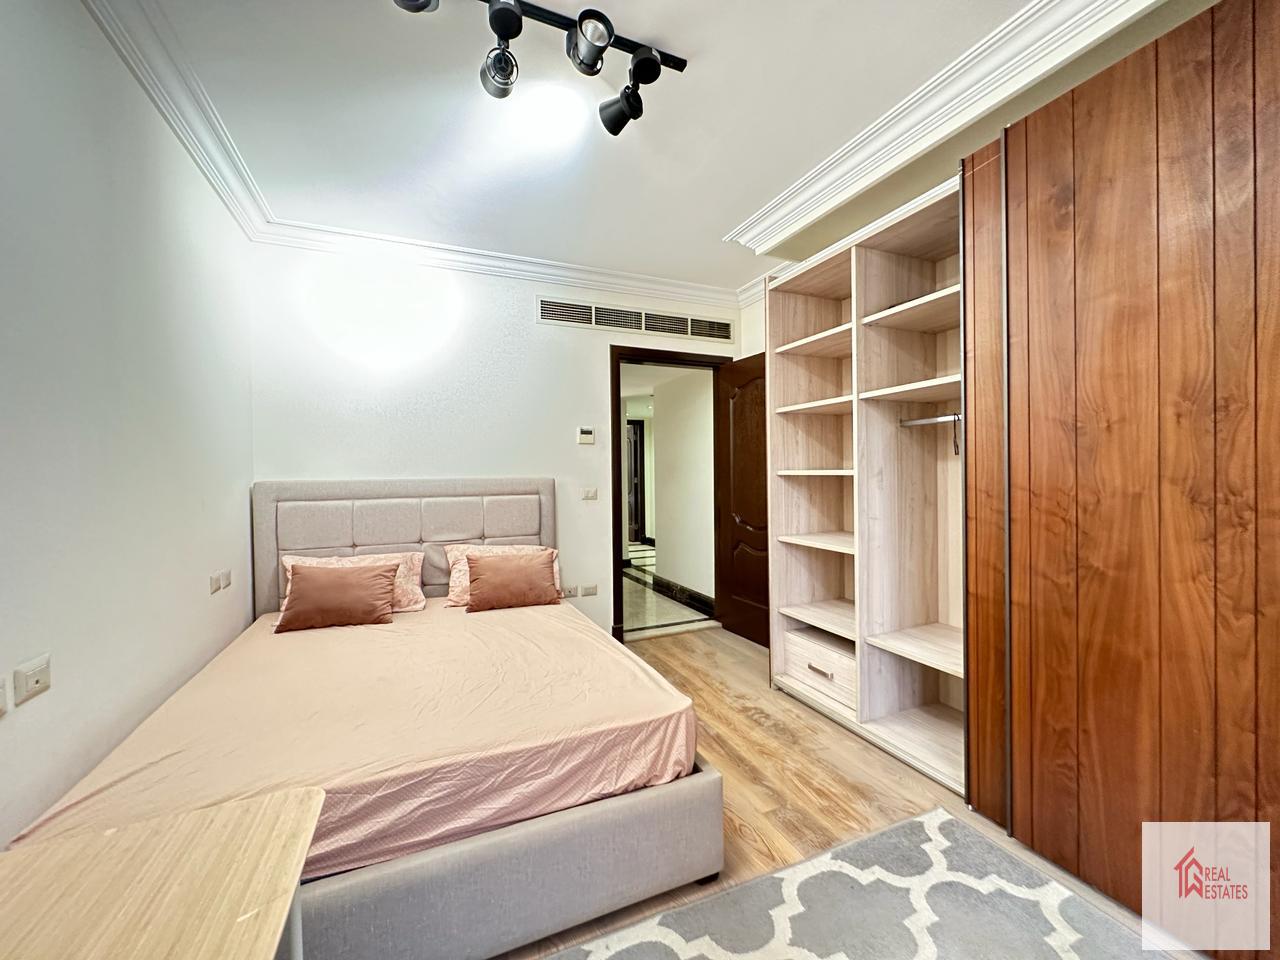 Аренда современной меблированной квартиры Маади Сараят Каир Египет 3 спальни 3 ванные комнаты с мебелью 2 этаж